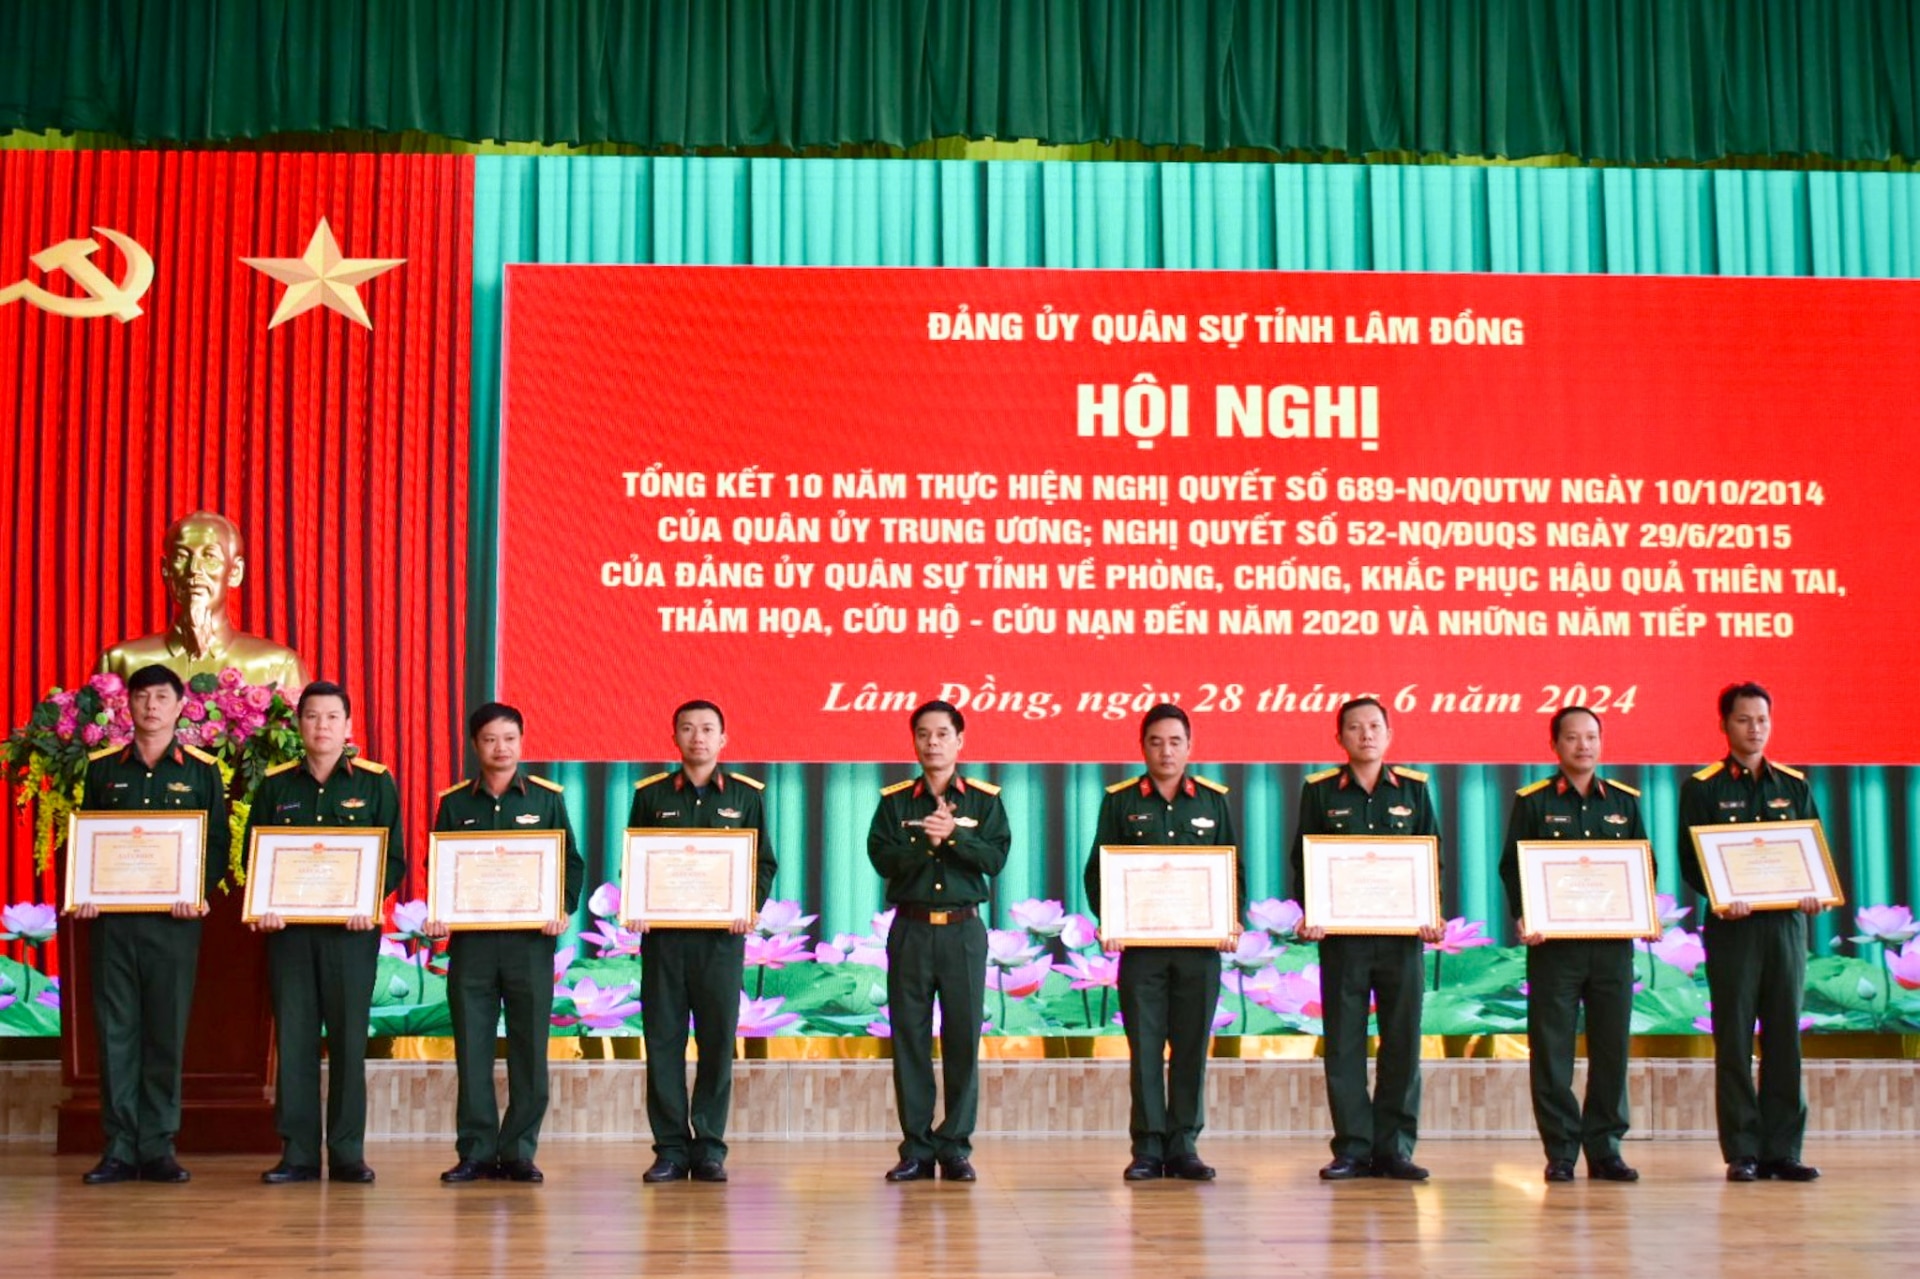 Khen thưởng các tập thể có thành tích trong 10 năm thực hiện Nghị quyết 689 của Quân ủy Trung ương, Nghị quyết số 2330 của Đảng ủy Quân khu và Nghị quyết số 52 của Đảng ủy Quân sự tỉnh